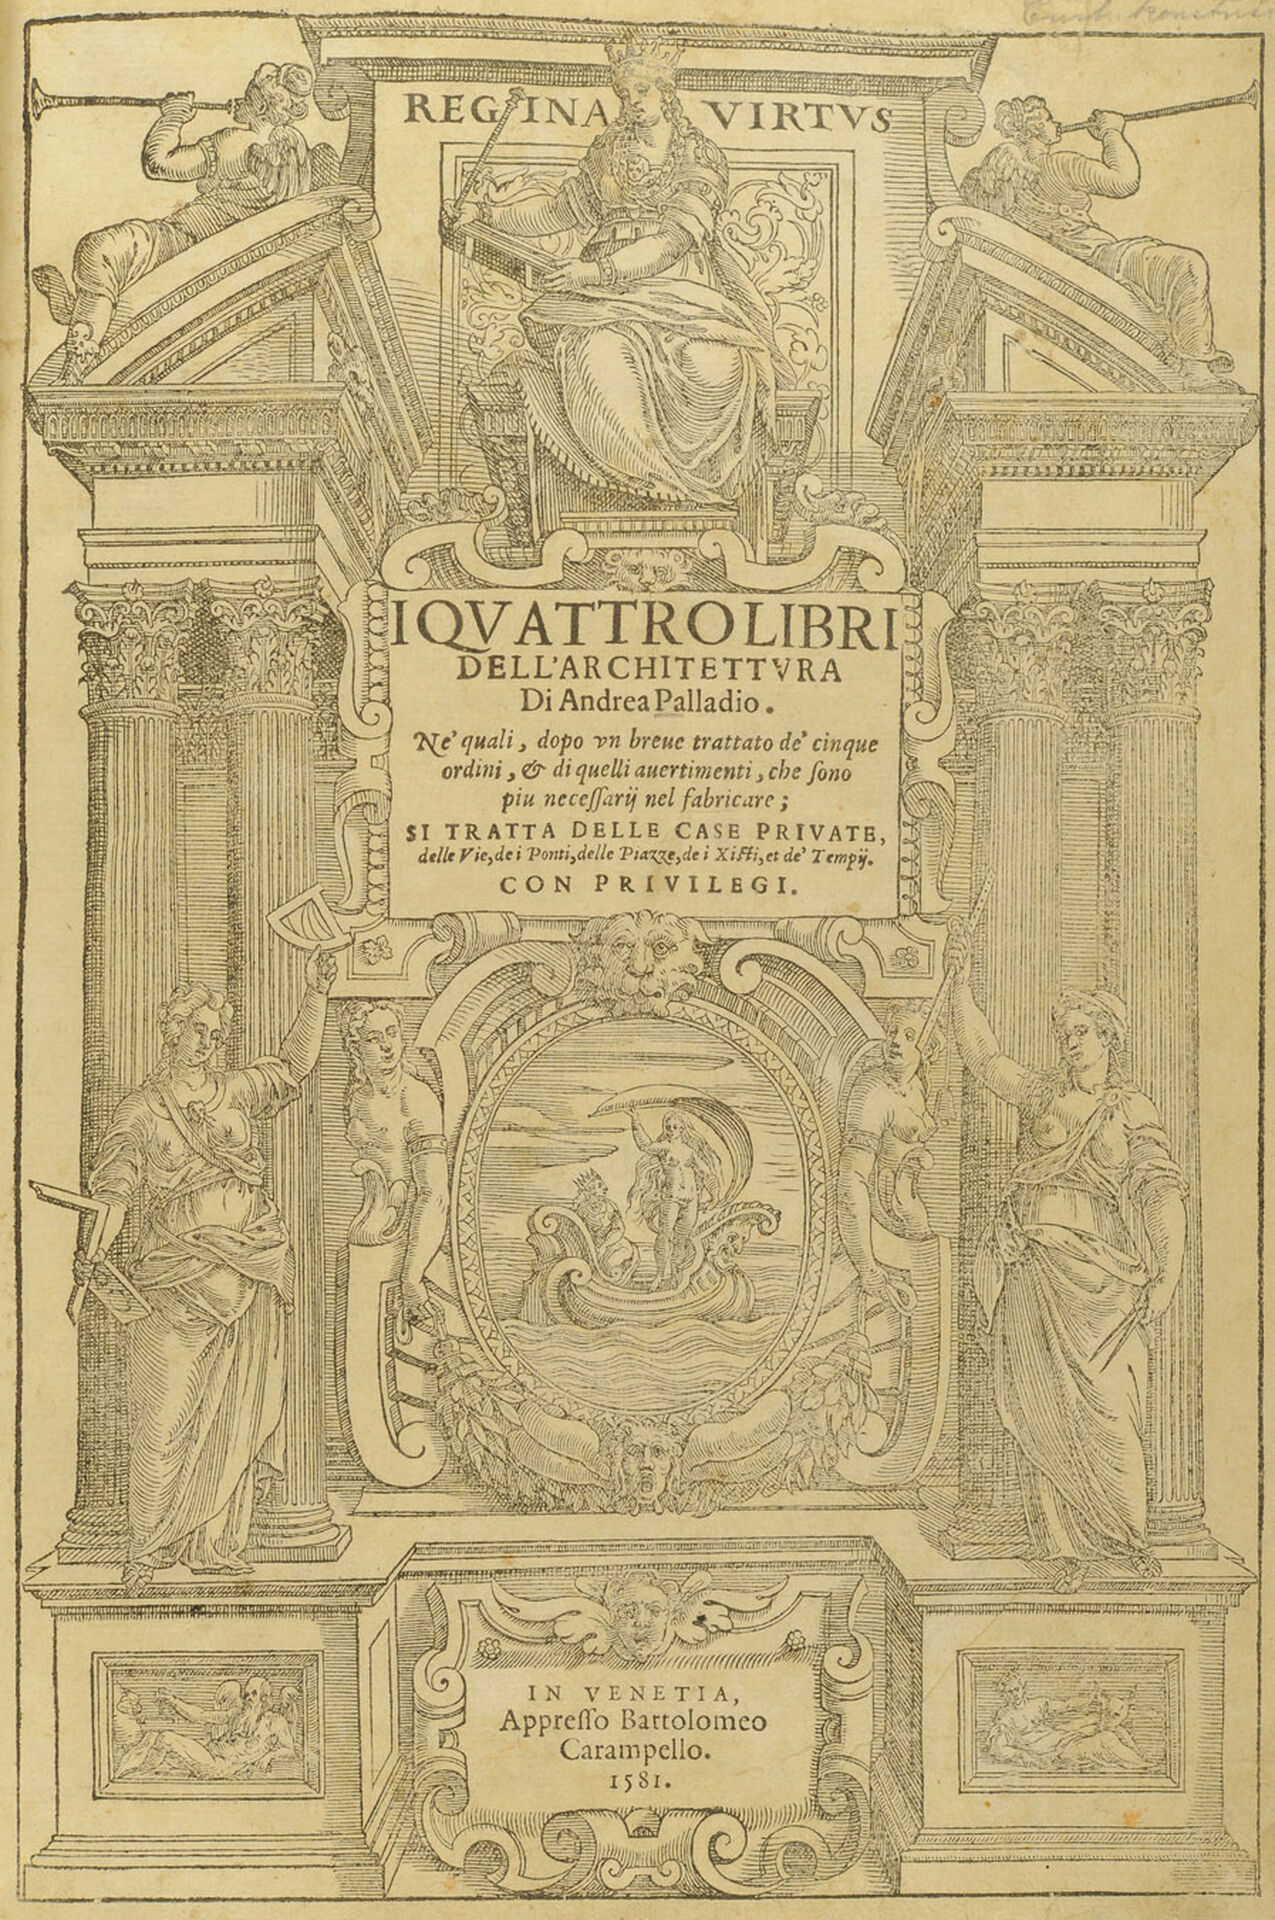 Title page, from I quattro libri dell’architettura by Andrea Palladio